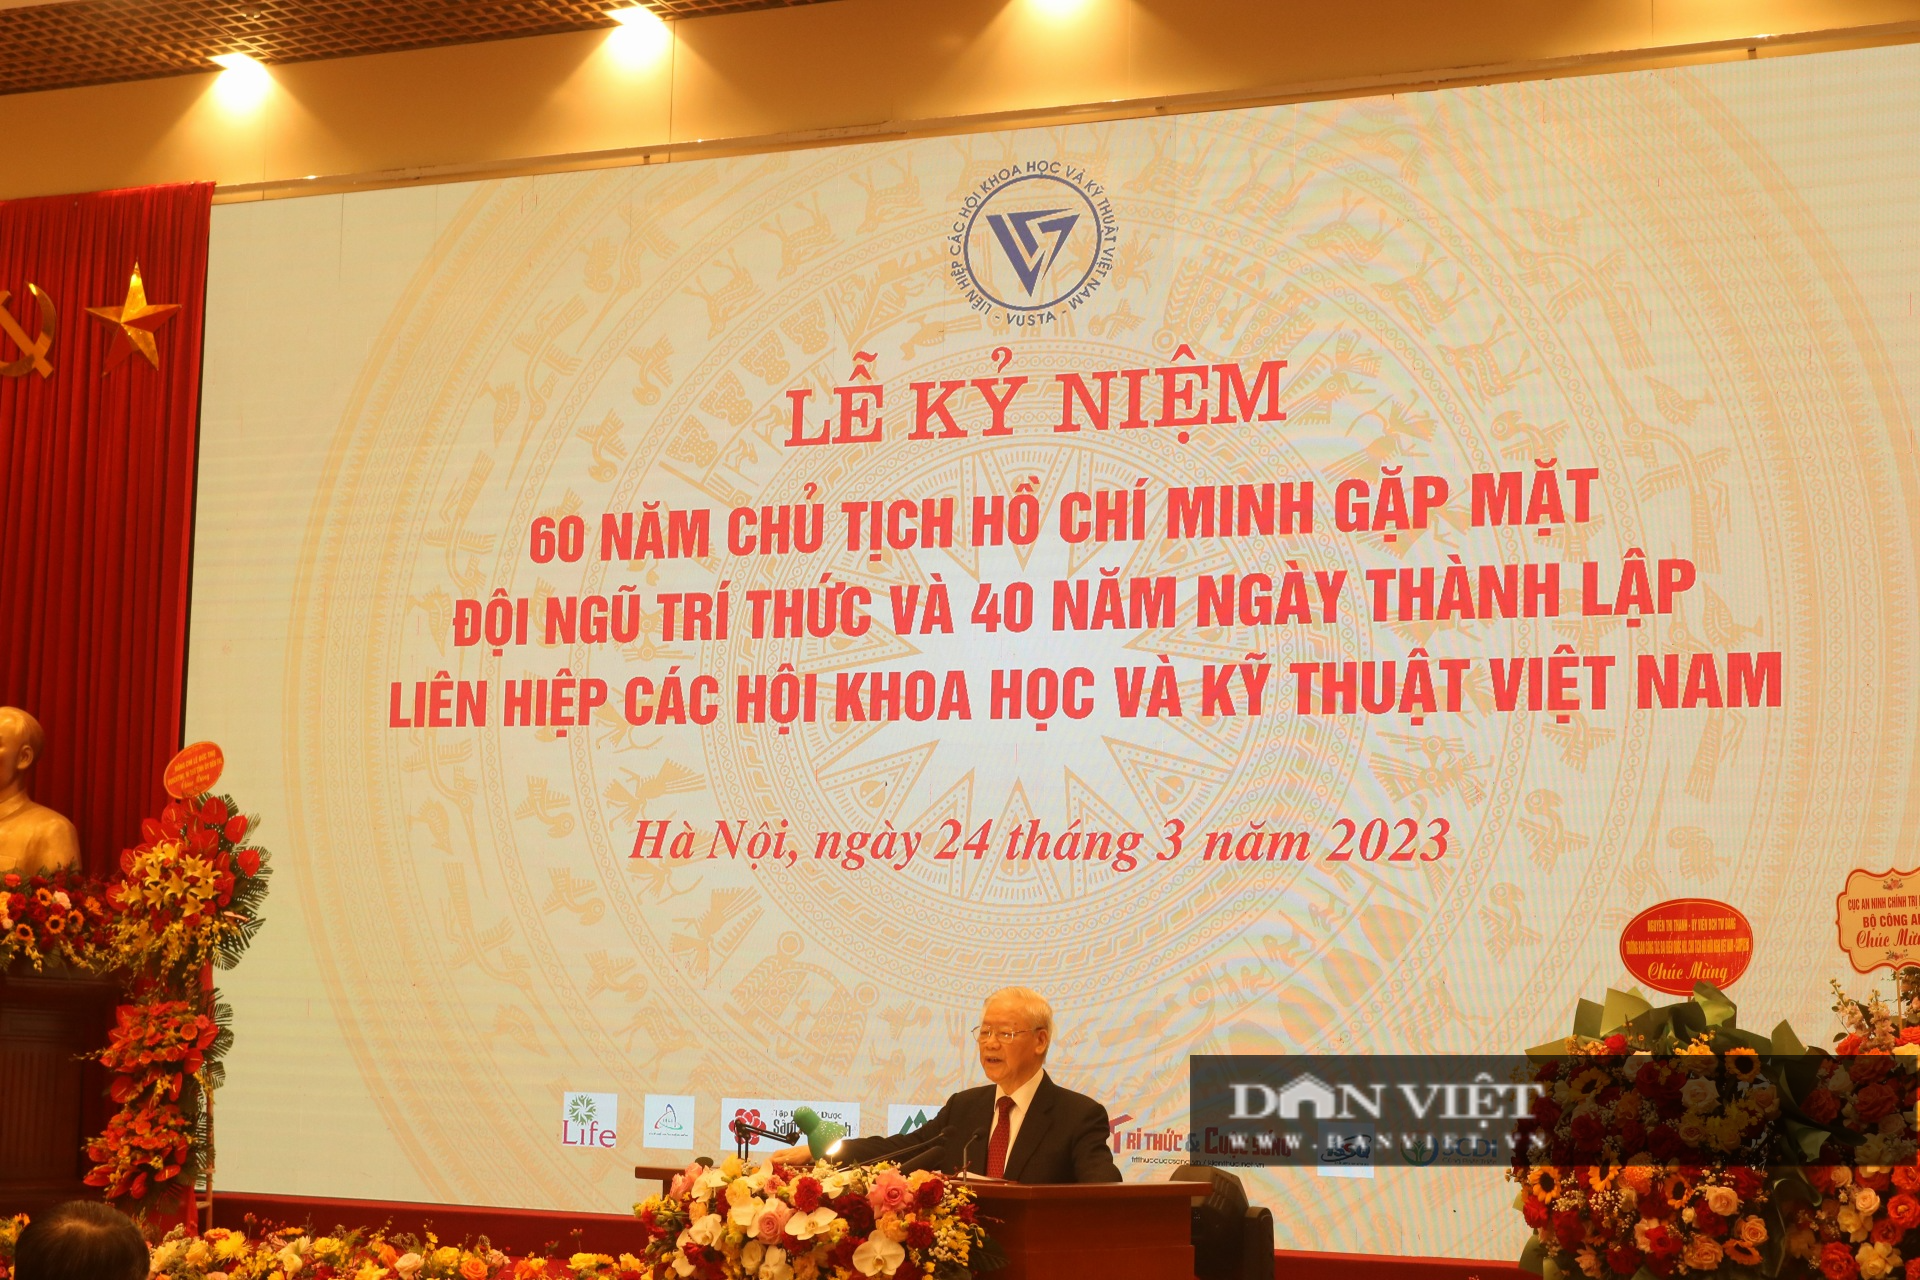 Tổng bí thư Nguyễn Phú Trọng kỳ vọng đội ngũ trí thức giúp nhân dân tiến quân vào khoa học công nghệ - Ảnh 3.